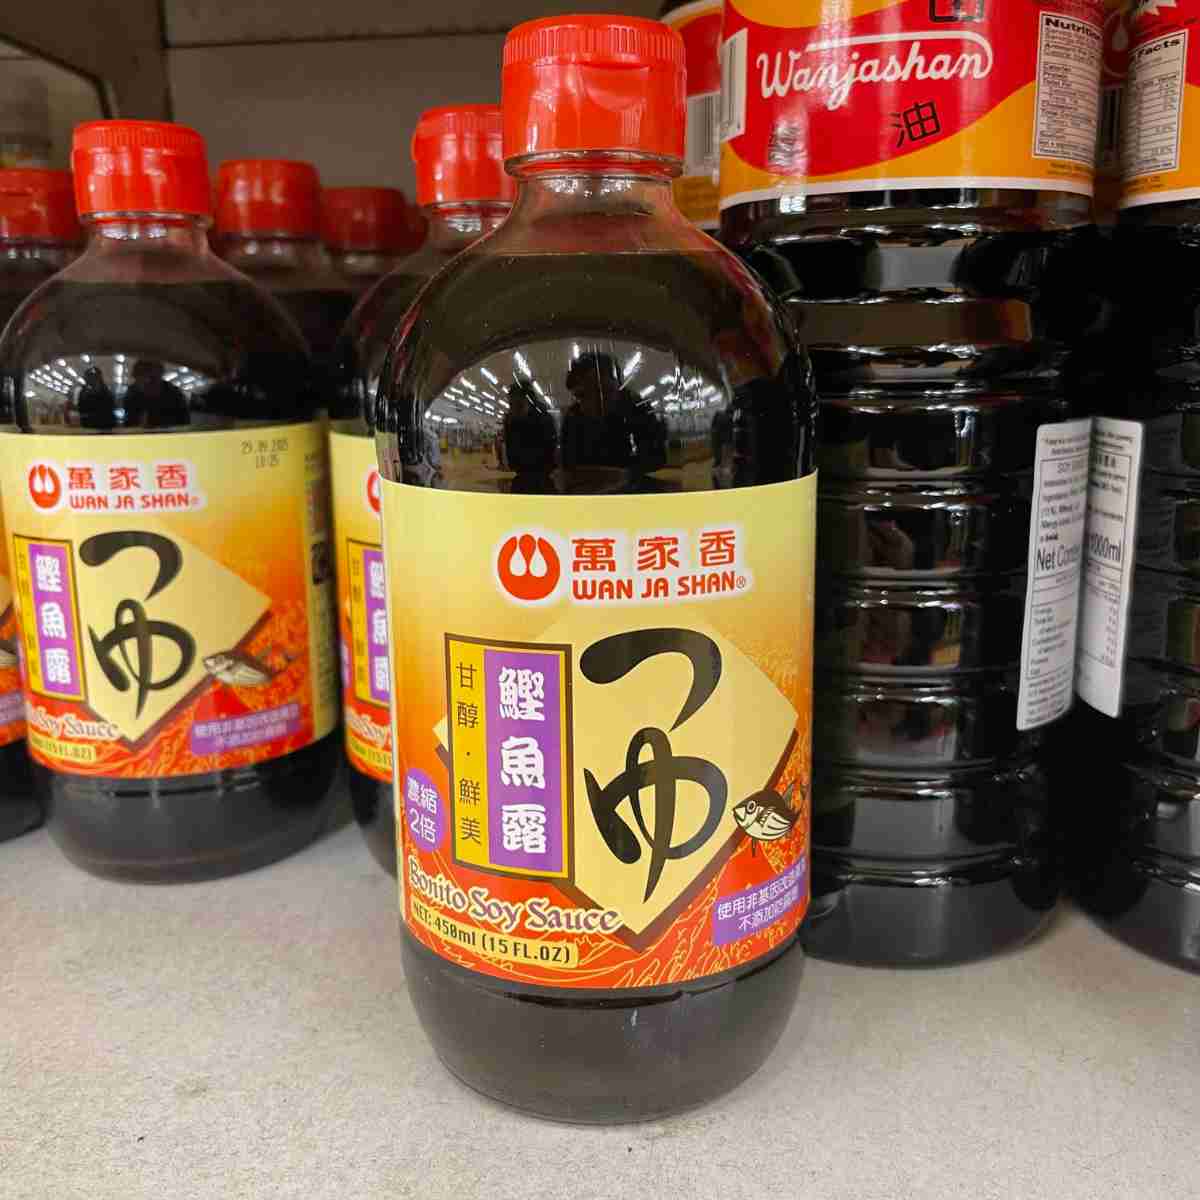 bottled Tsuyu sauce uses